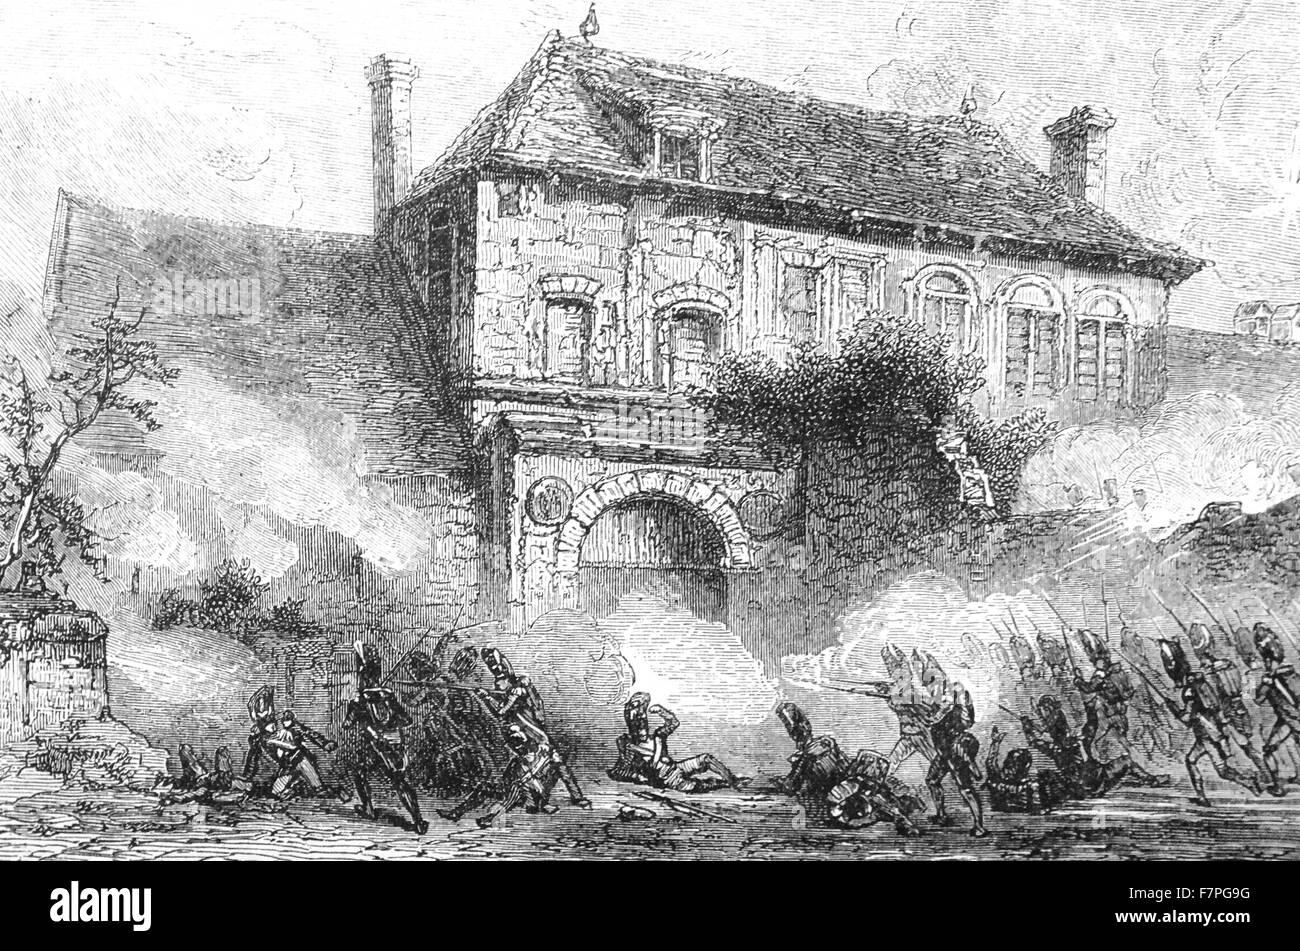 Château d'30 ans ferme, près de Waterloo, en Belgique, où les Britanniques et les autres forces alliées face l'Armée de Napoléon à la bataille de Waterloo le 18 juin 1815. Banque D'Images